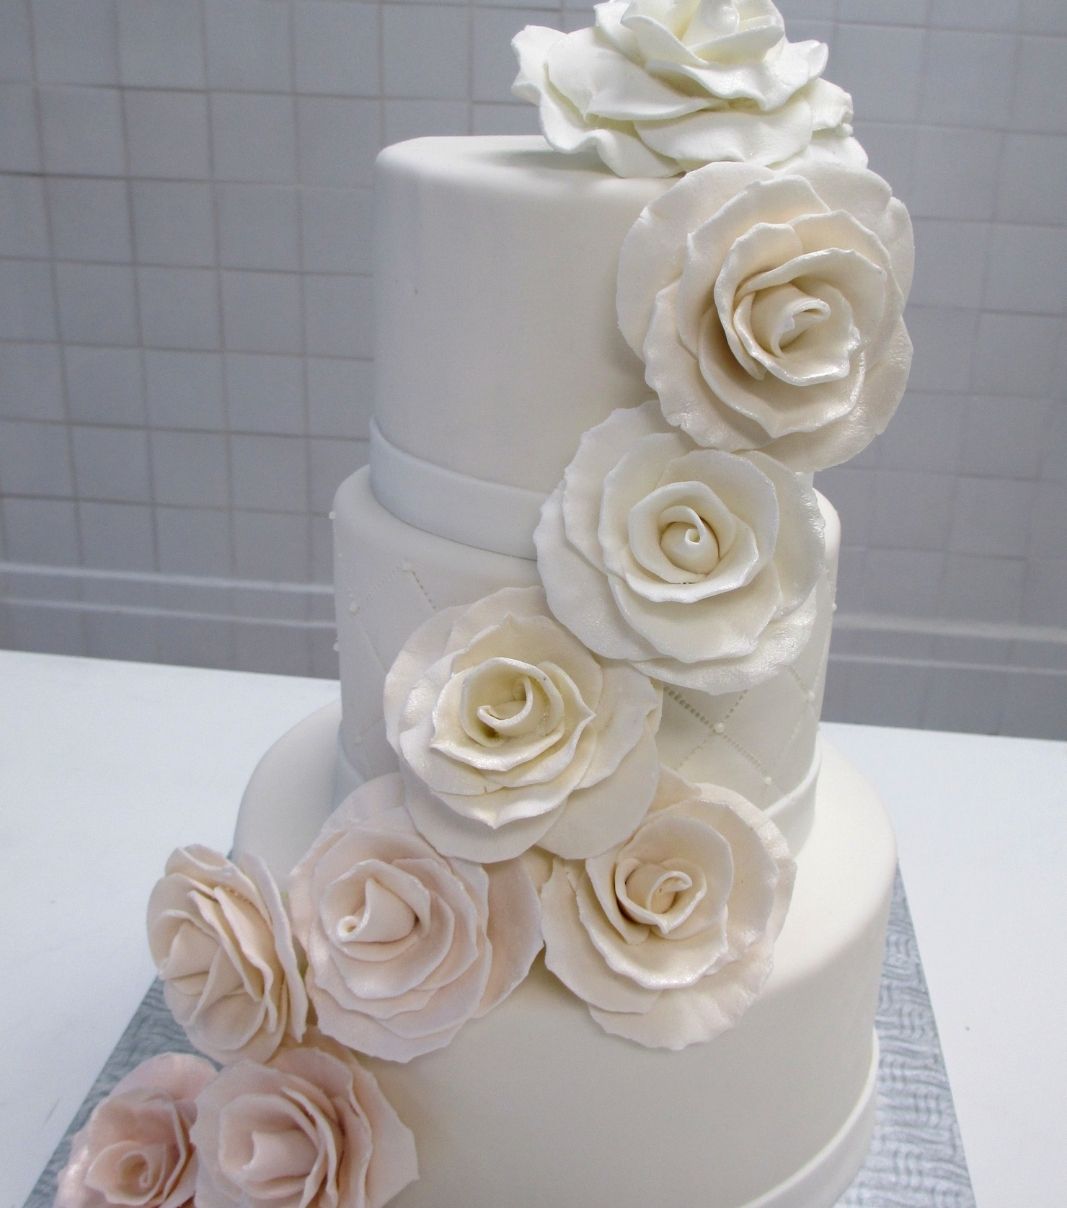 Gâteau de mariage: gâteau de 3 étages avec une couverture au fondant blanc et décoré d'une cascade dégradée de blanc à rose champagne de roses en fondant sculptées à la main.